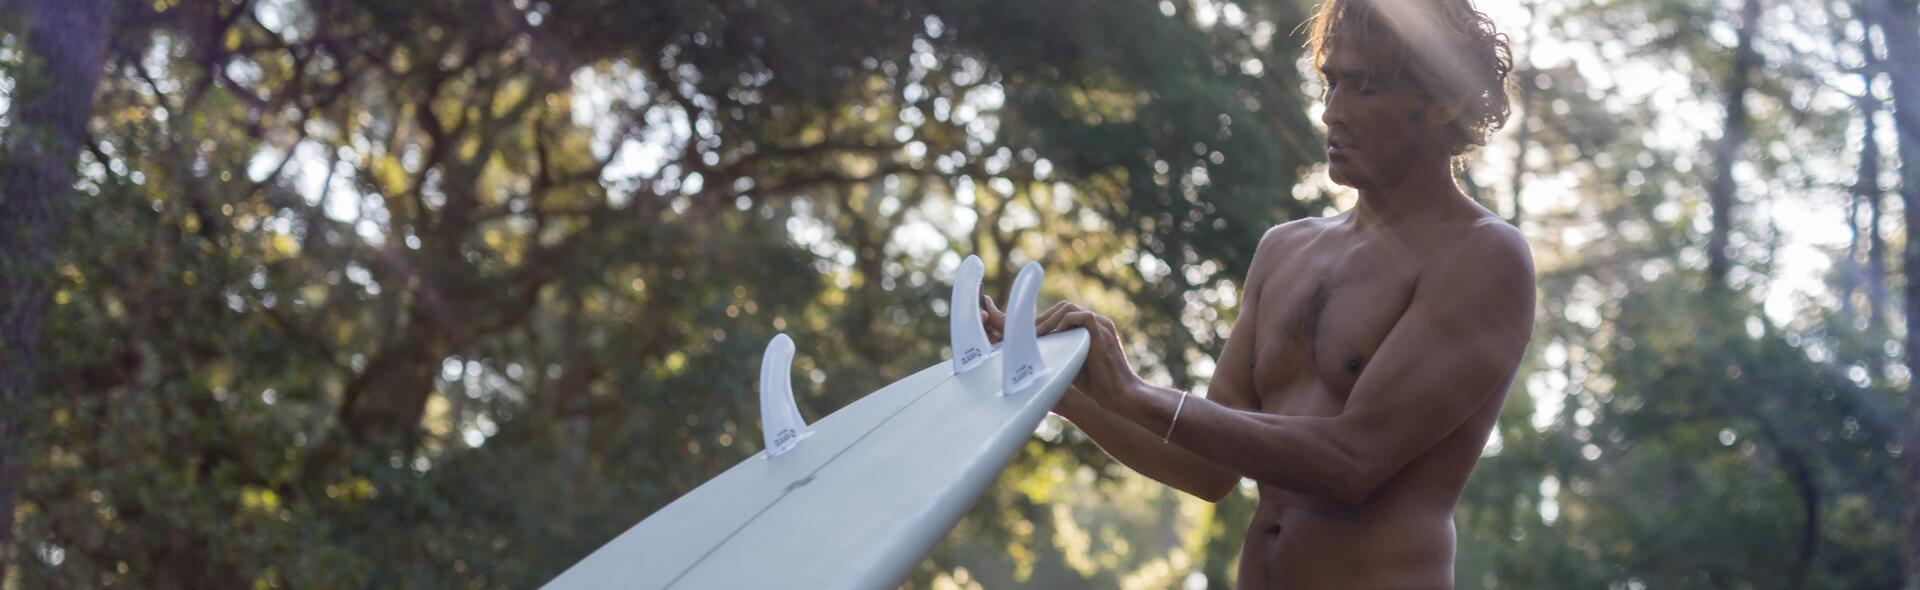 Limpar a prancha de surf: guia de como fazer